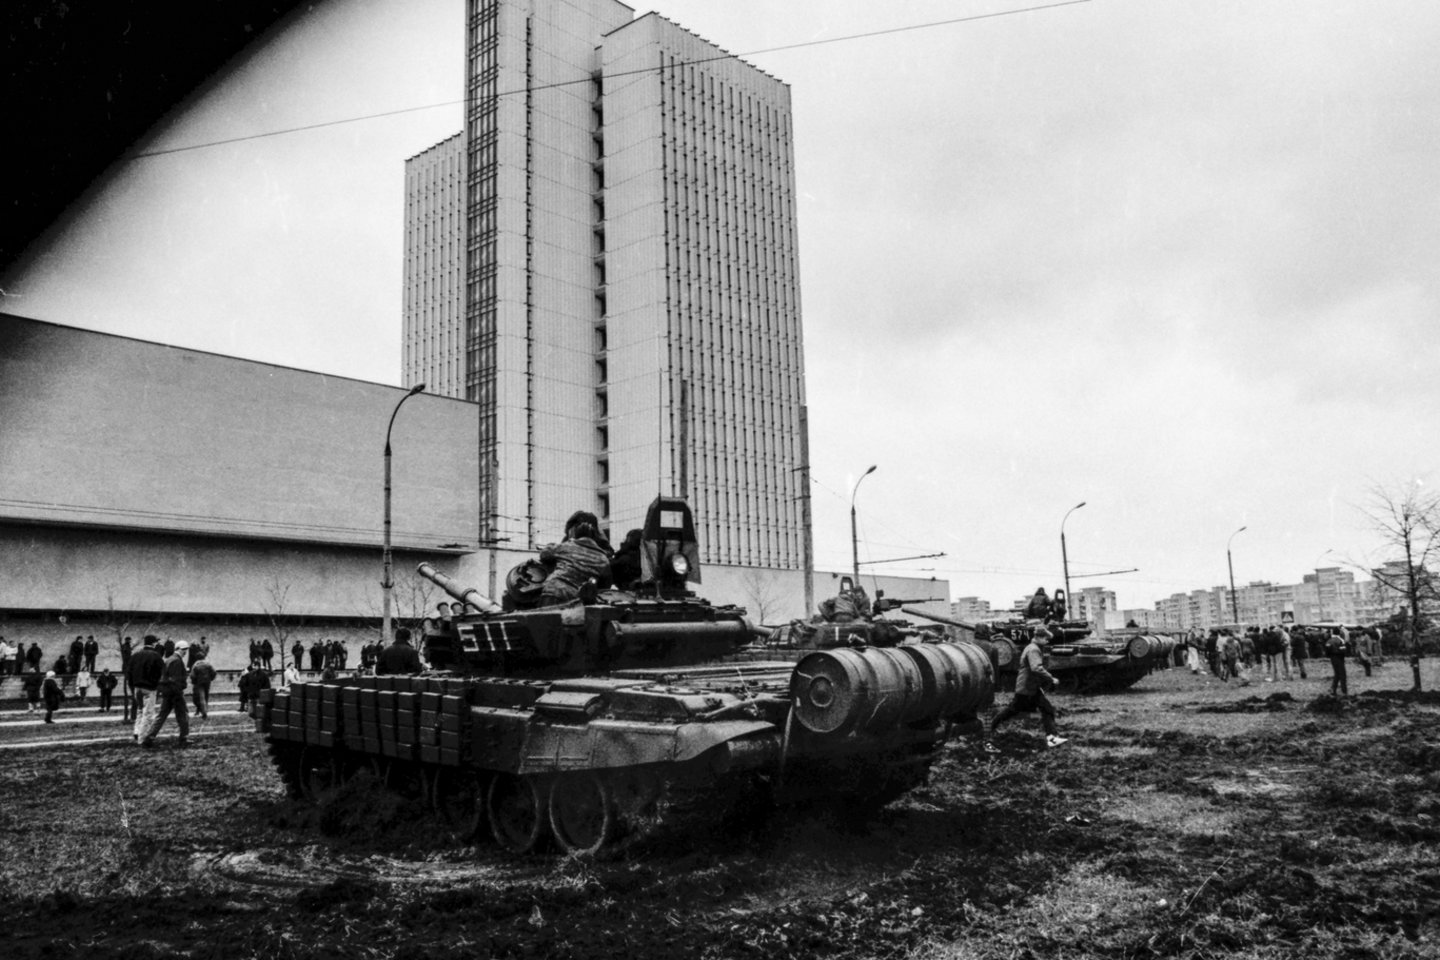  Tuo metu, kai iš Aukščiausiosios Tarybos buvo nešami paveikslai, sovietų kariai jau buvo užėmę Spaudos rūmus.<br>V.Ščiavinsko nuotr.